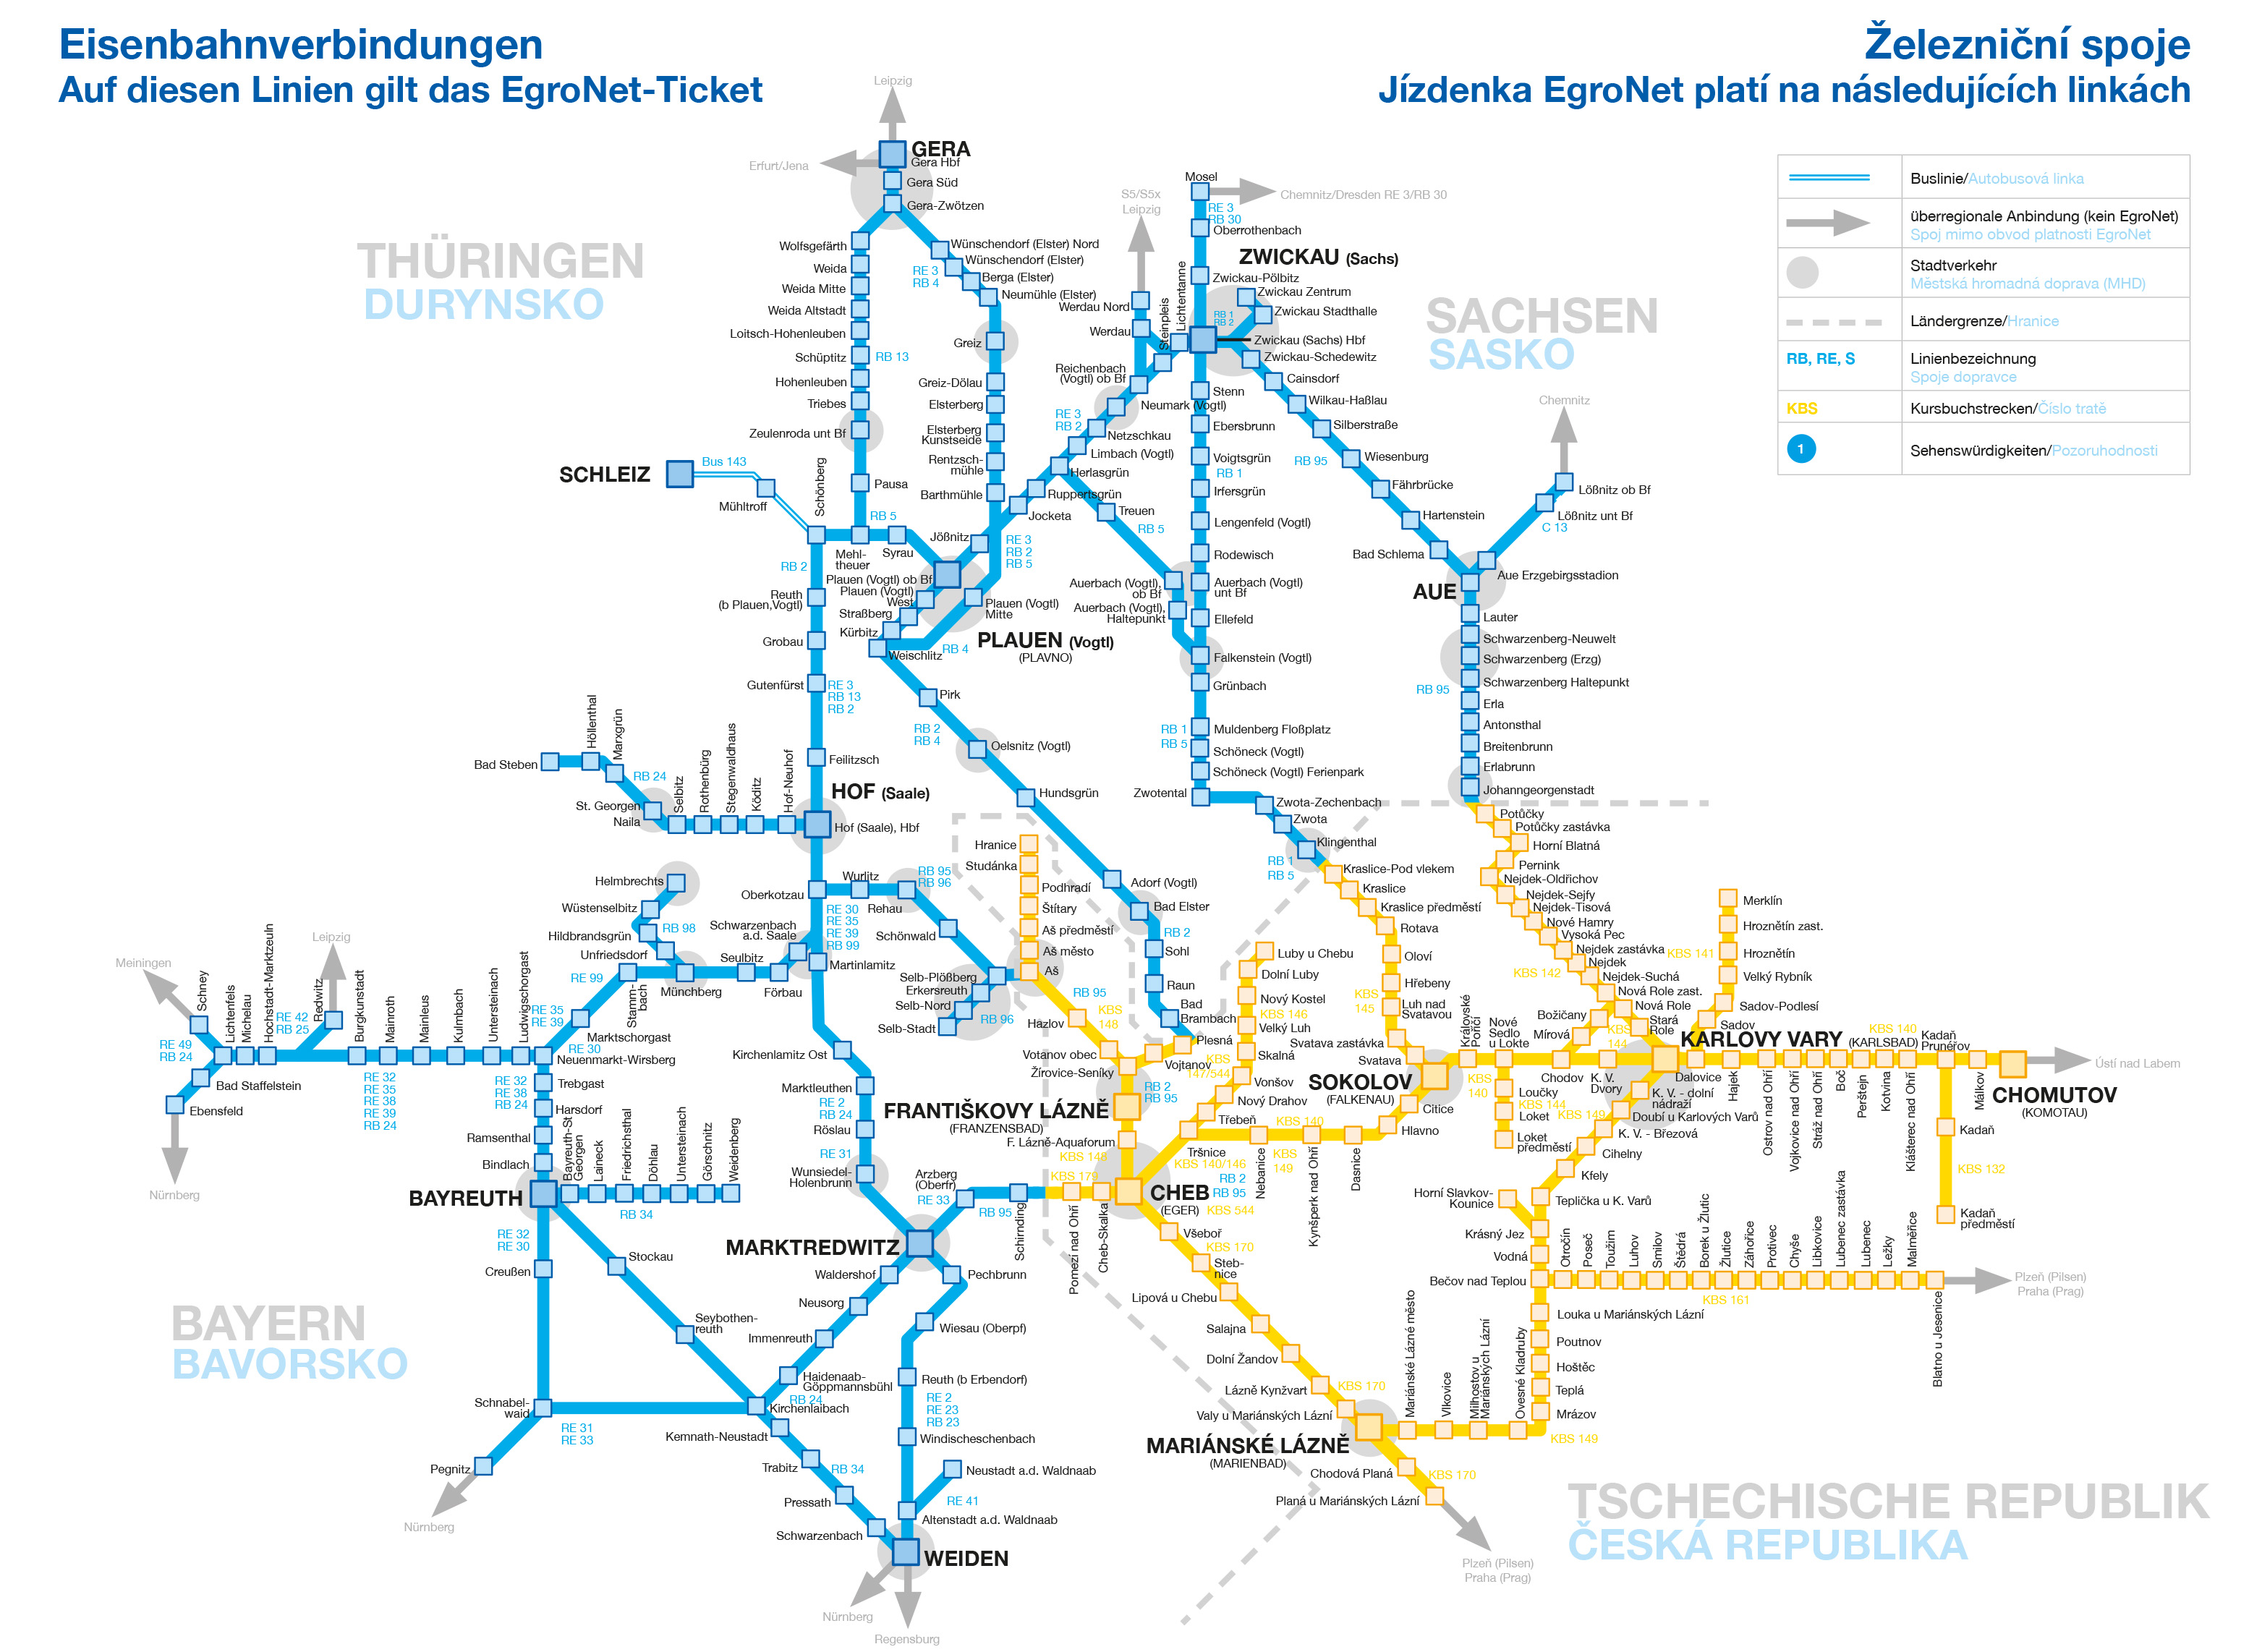 [Translate to český:] Netzkarte mit den Bahnlinien in der EgroNet-Region